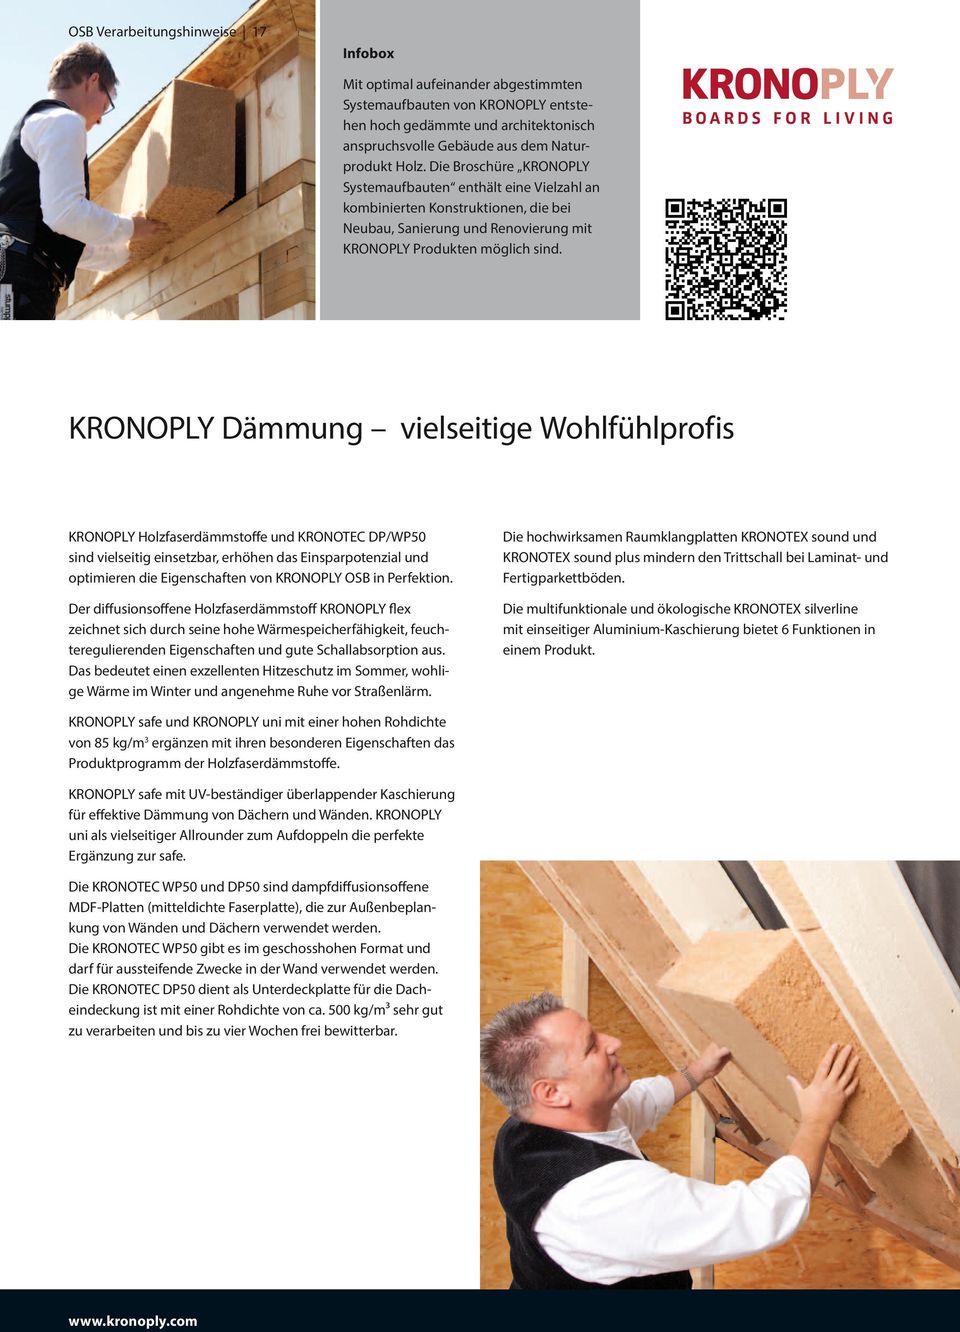 KRONOPLY Dämmung vielseitige Wohlfühlprofis KRONOPLY Holzfaserdämmstoffe und KRONOTEC DP/WP50 sind vielseitig einsetzbar, erhöhen das Einsparpotenzial und optimieren die Eigenschaften von KRONOPLY